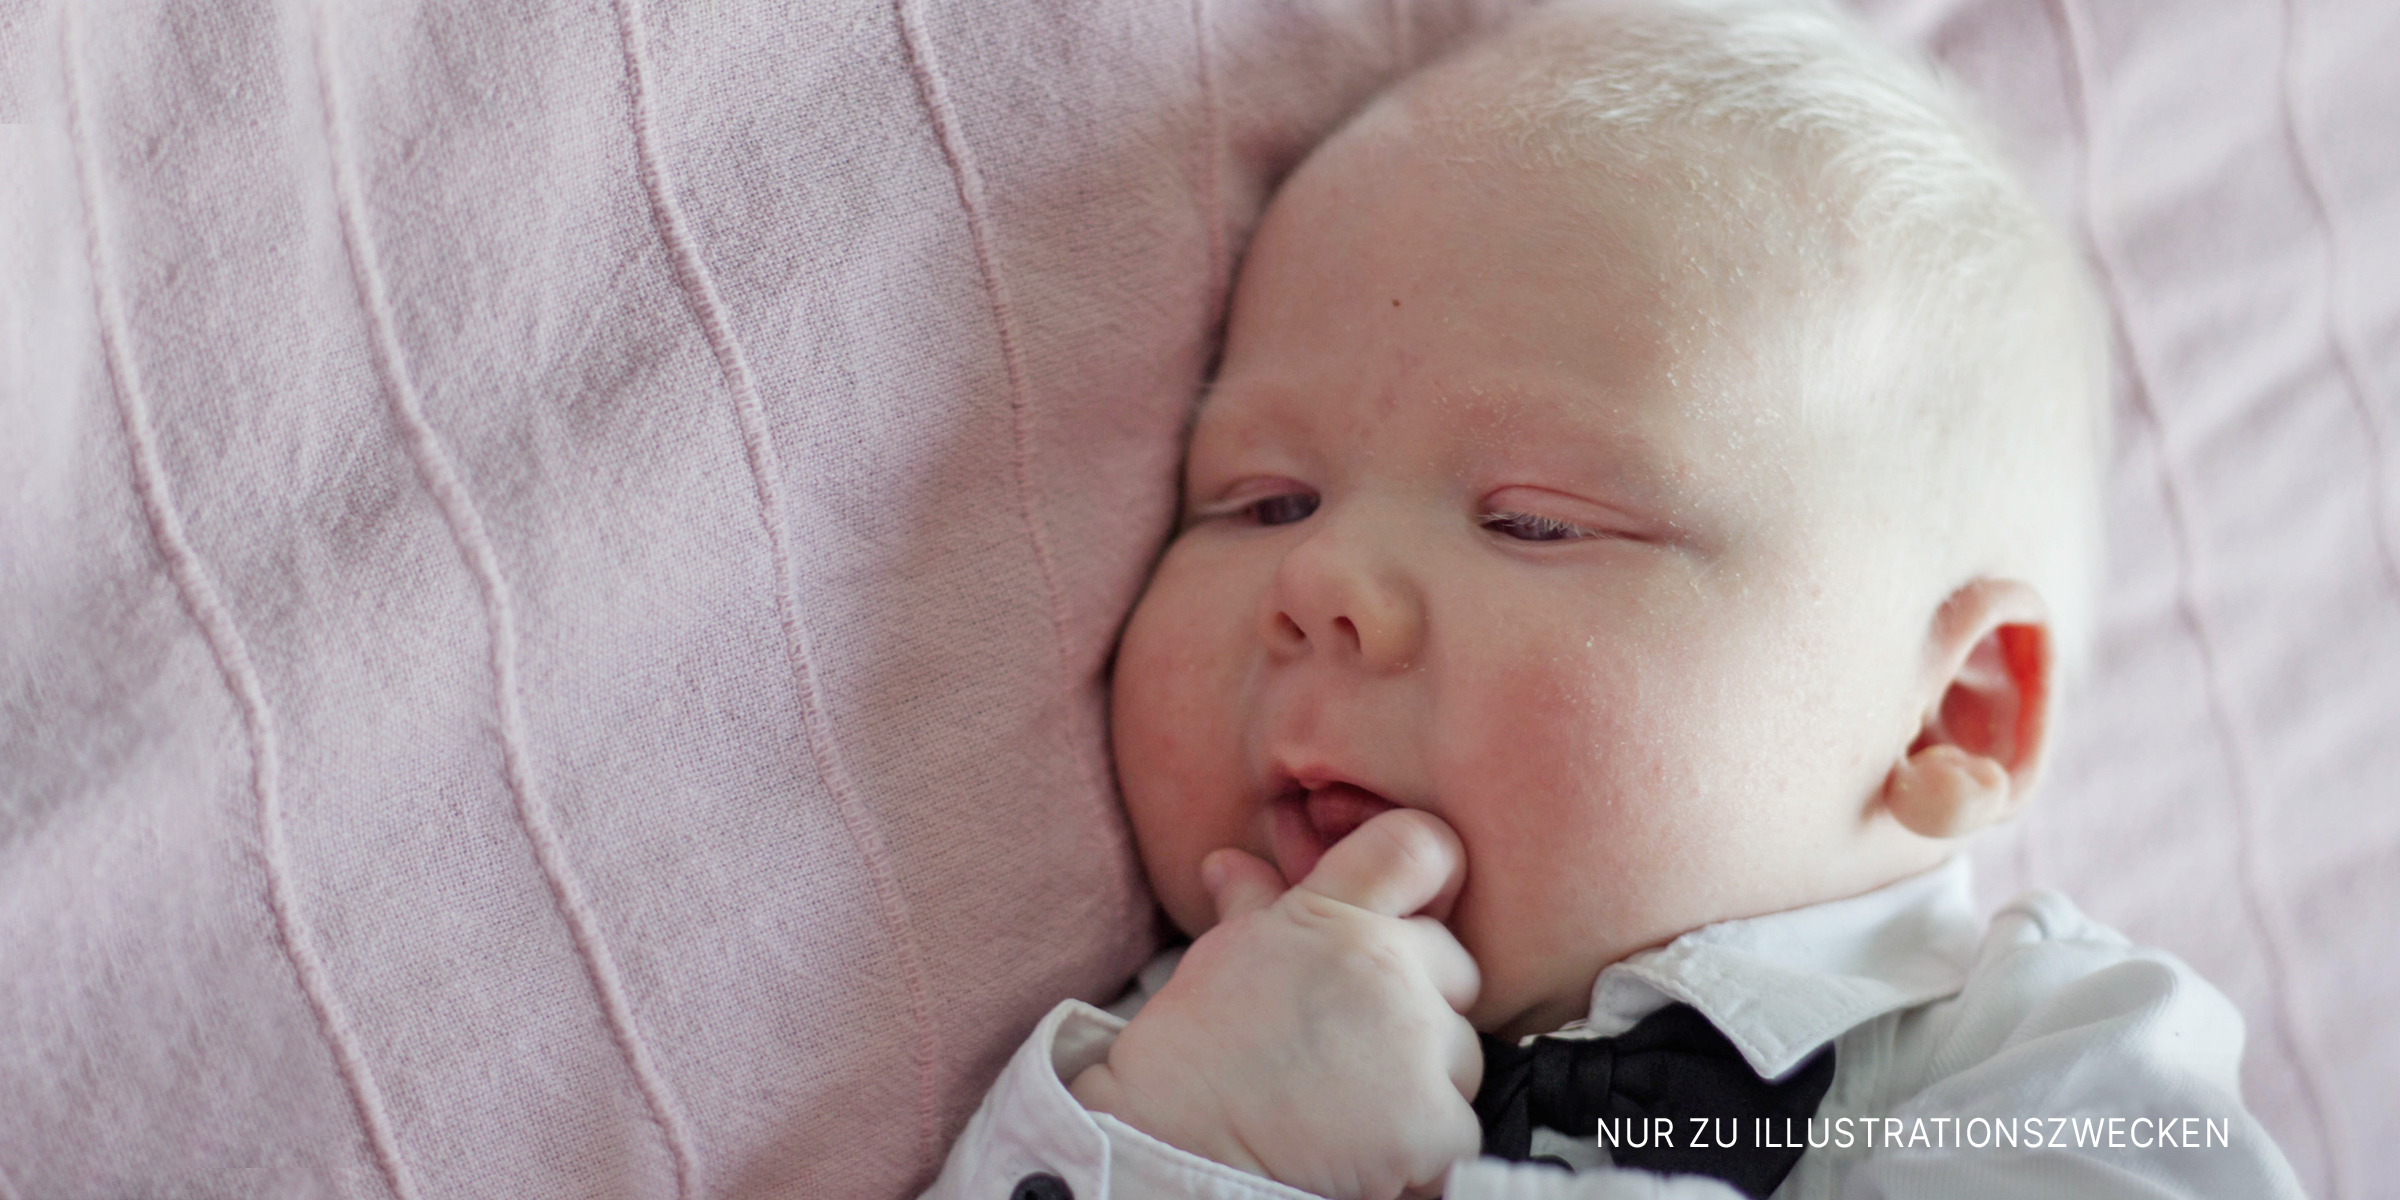 Baby mit Albinismus auf einer Decke liegend | Quelle: Shutterstock